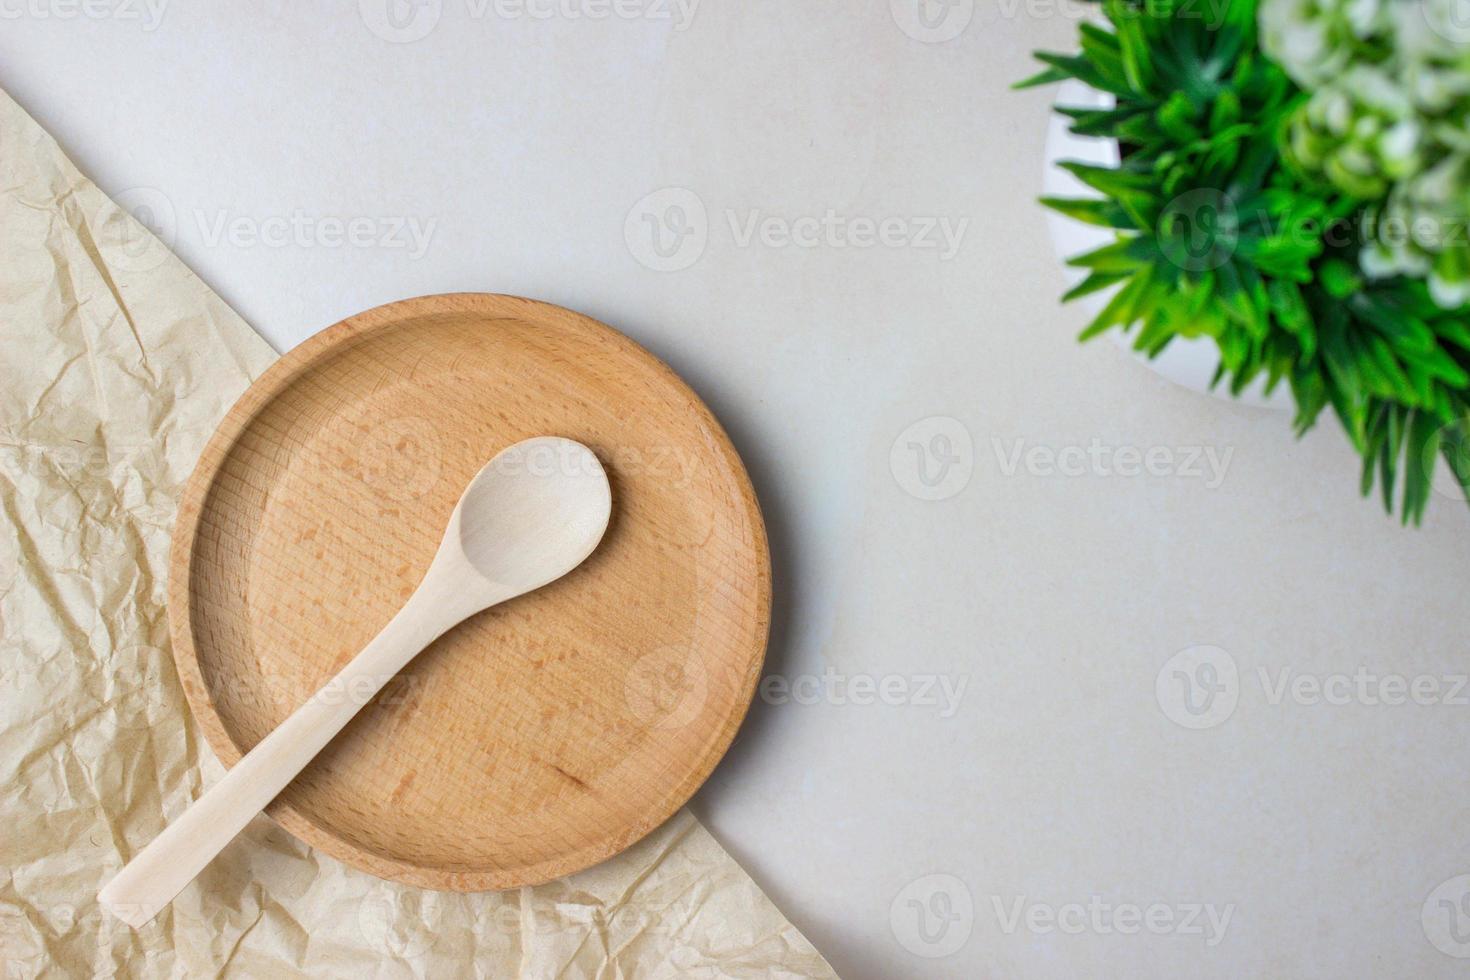 houten gebruiksvoorwerpen op de keukentafel. ronde plaat, een lepel, een groene plant. het concept van serveren, koken, koken, interieurdetails. bovenaanzicht foto